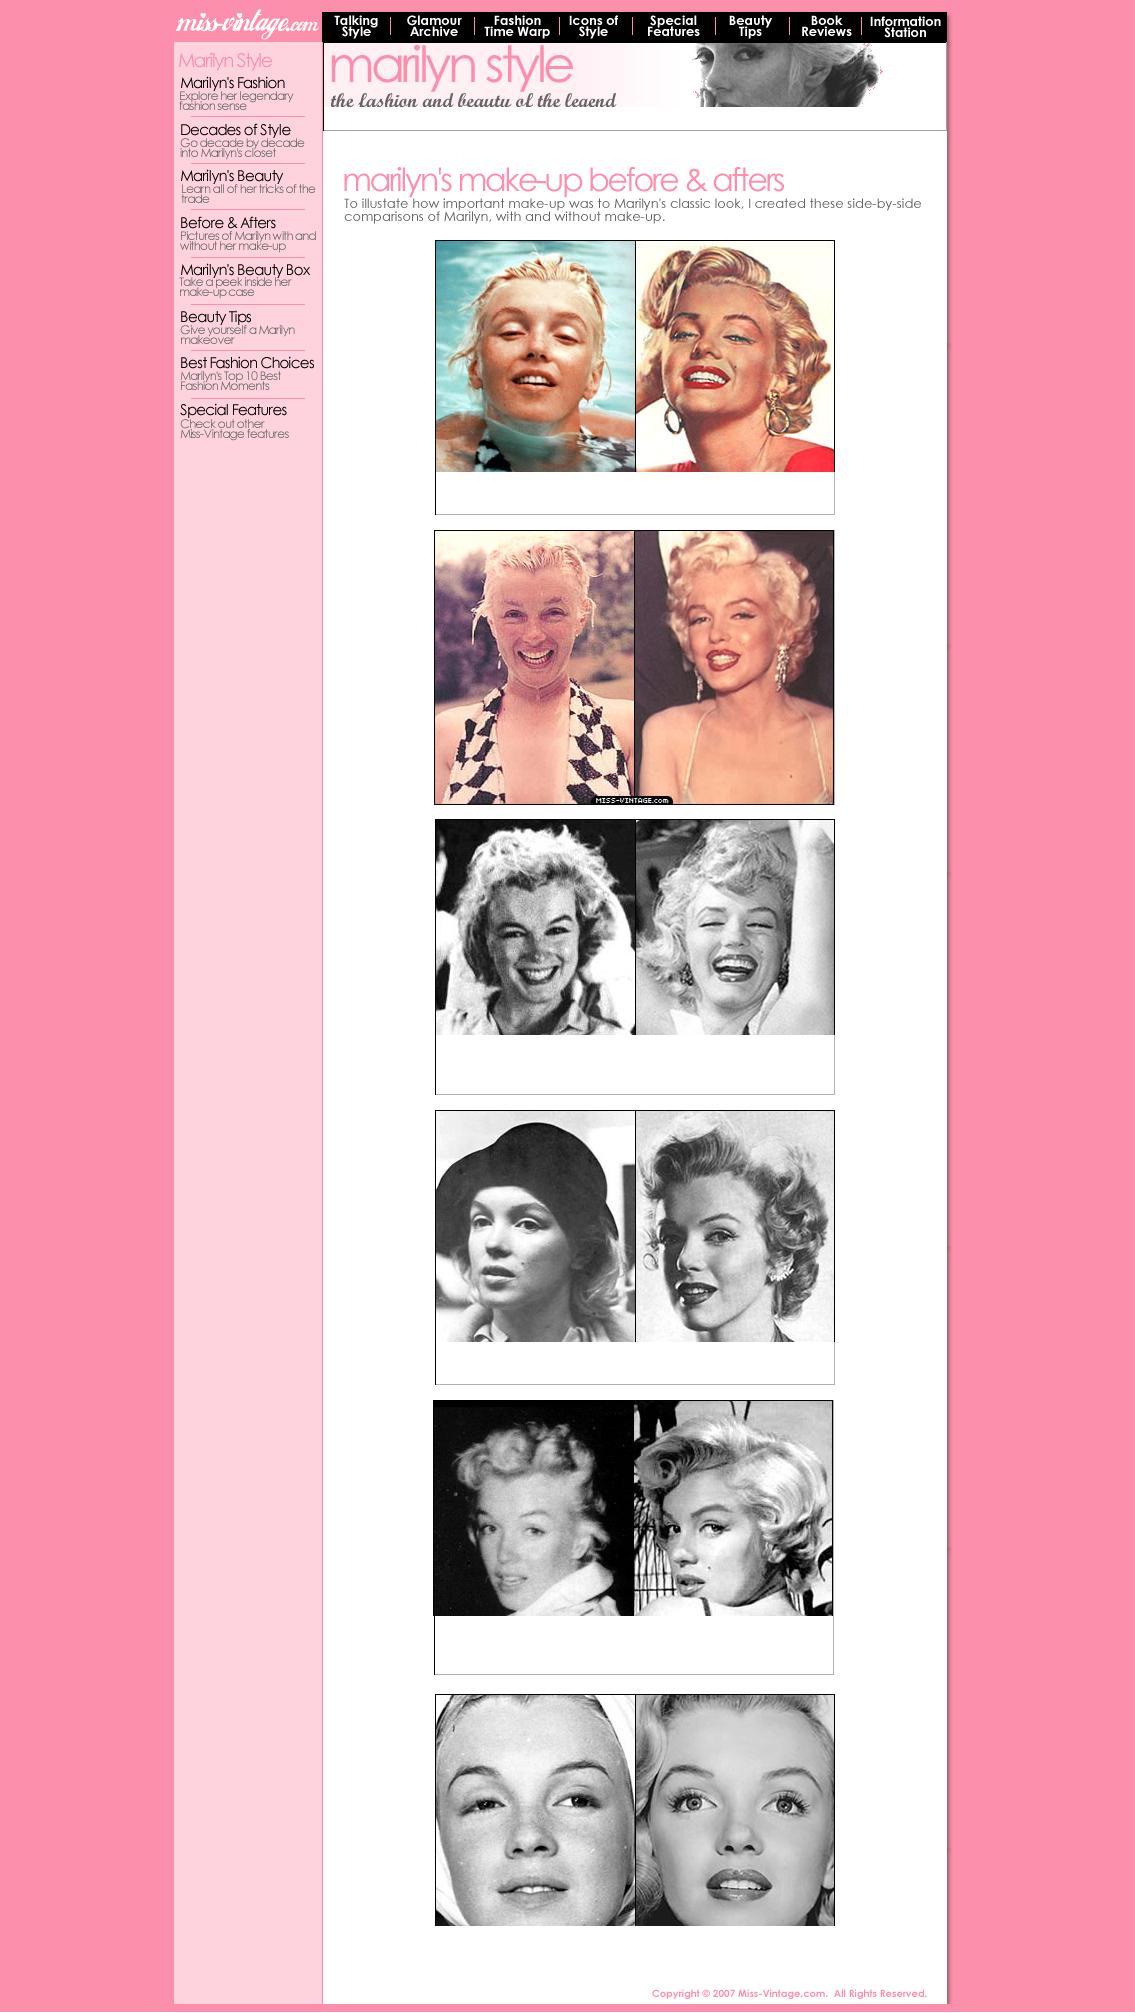 bare-face-Marilyn-Monroe